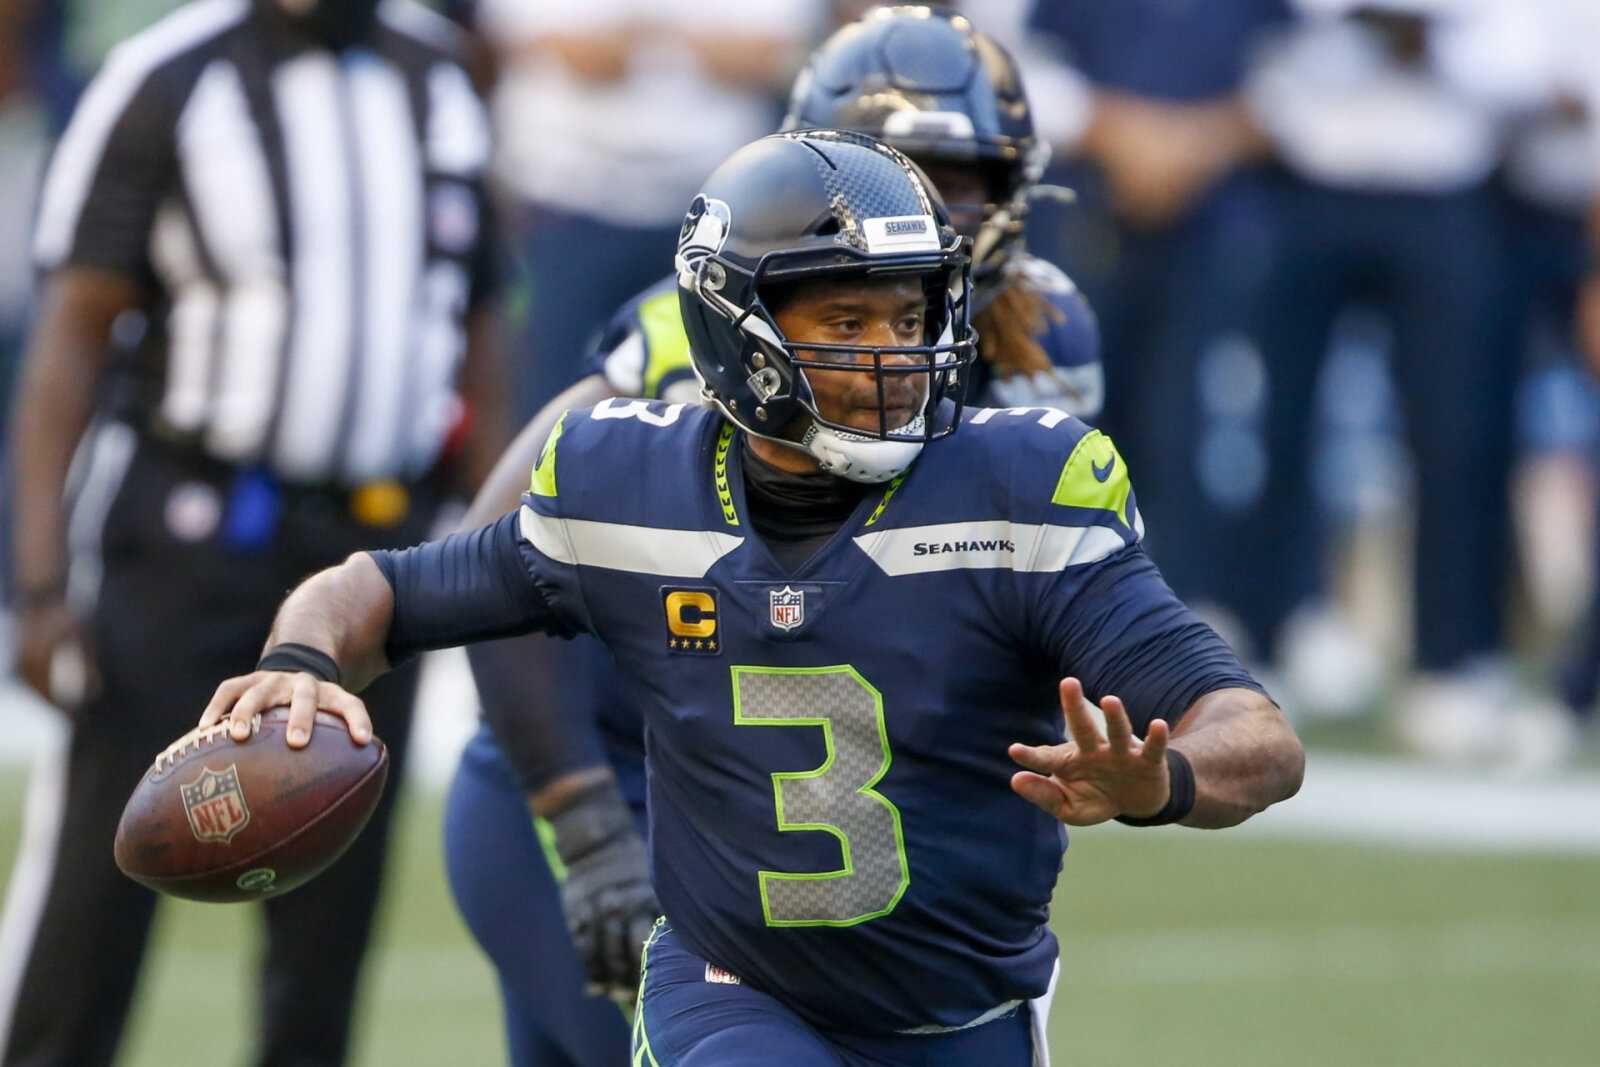 Un ancien joueur de la NFL pense que Russell Wilson pourrait encore quitter les Seahawks de Seattle à la fin de la saison